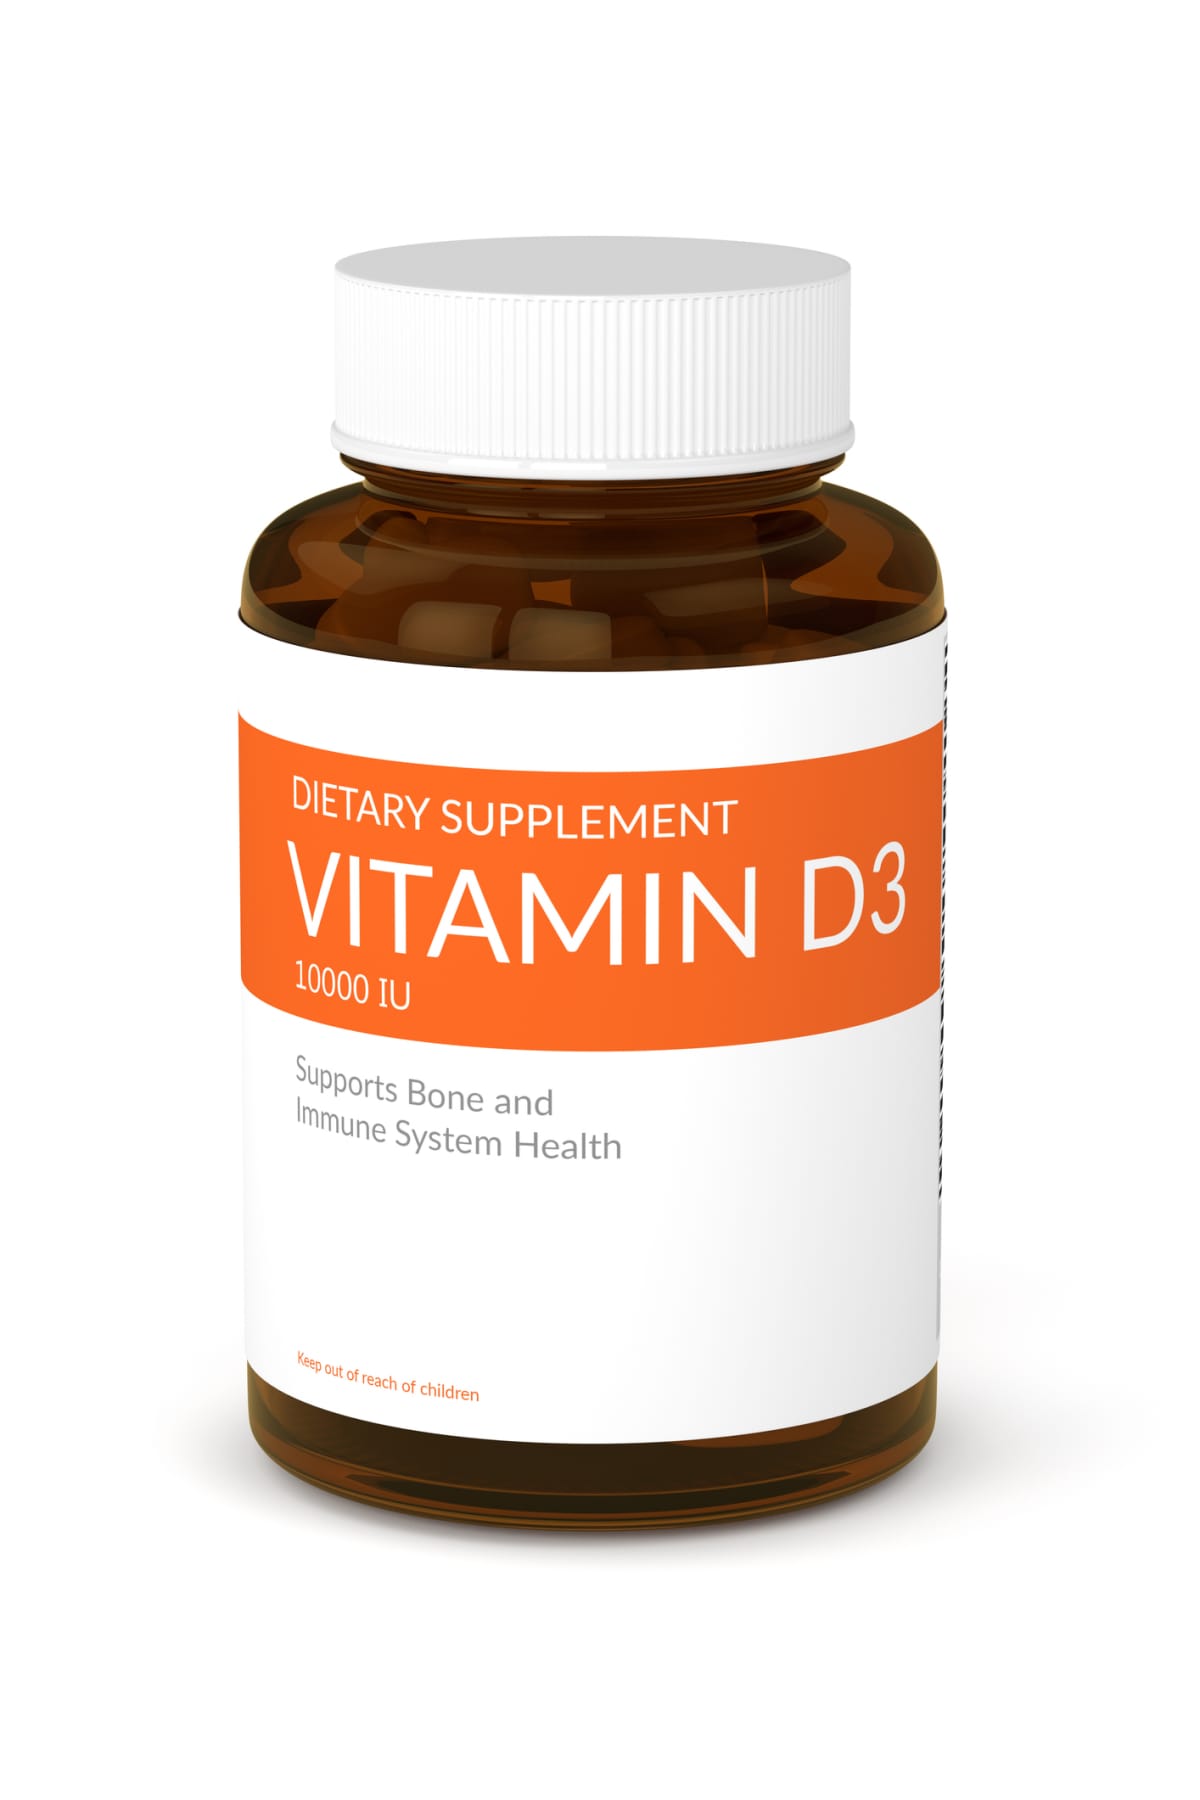 3d render of vitamin d3 pills in bottle over white background